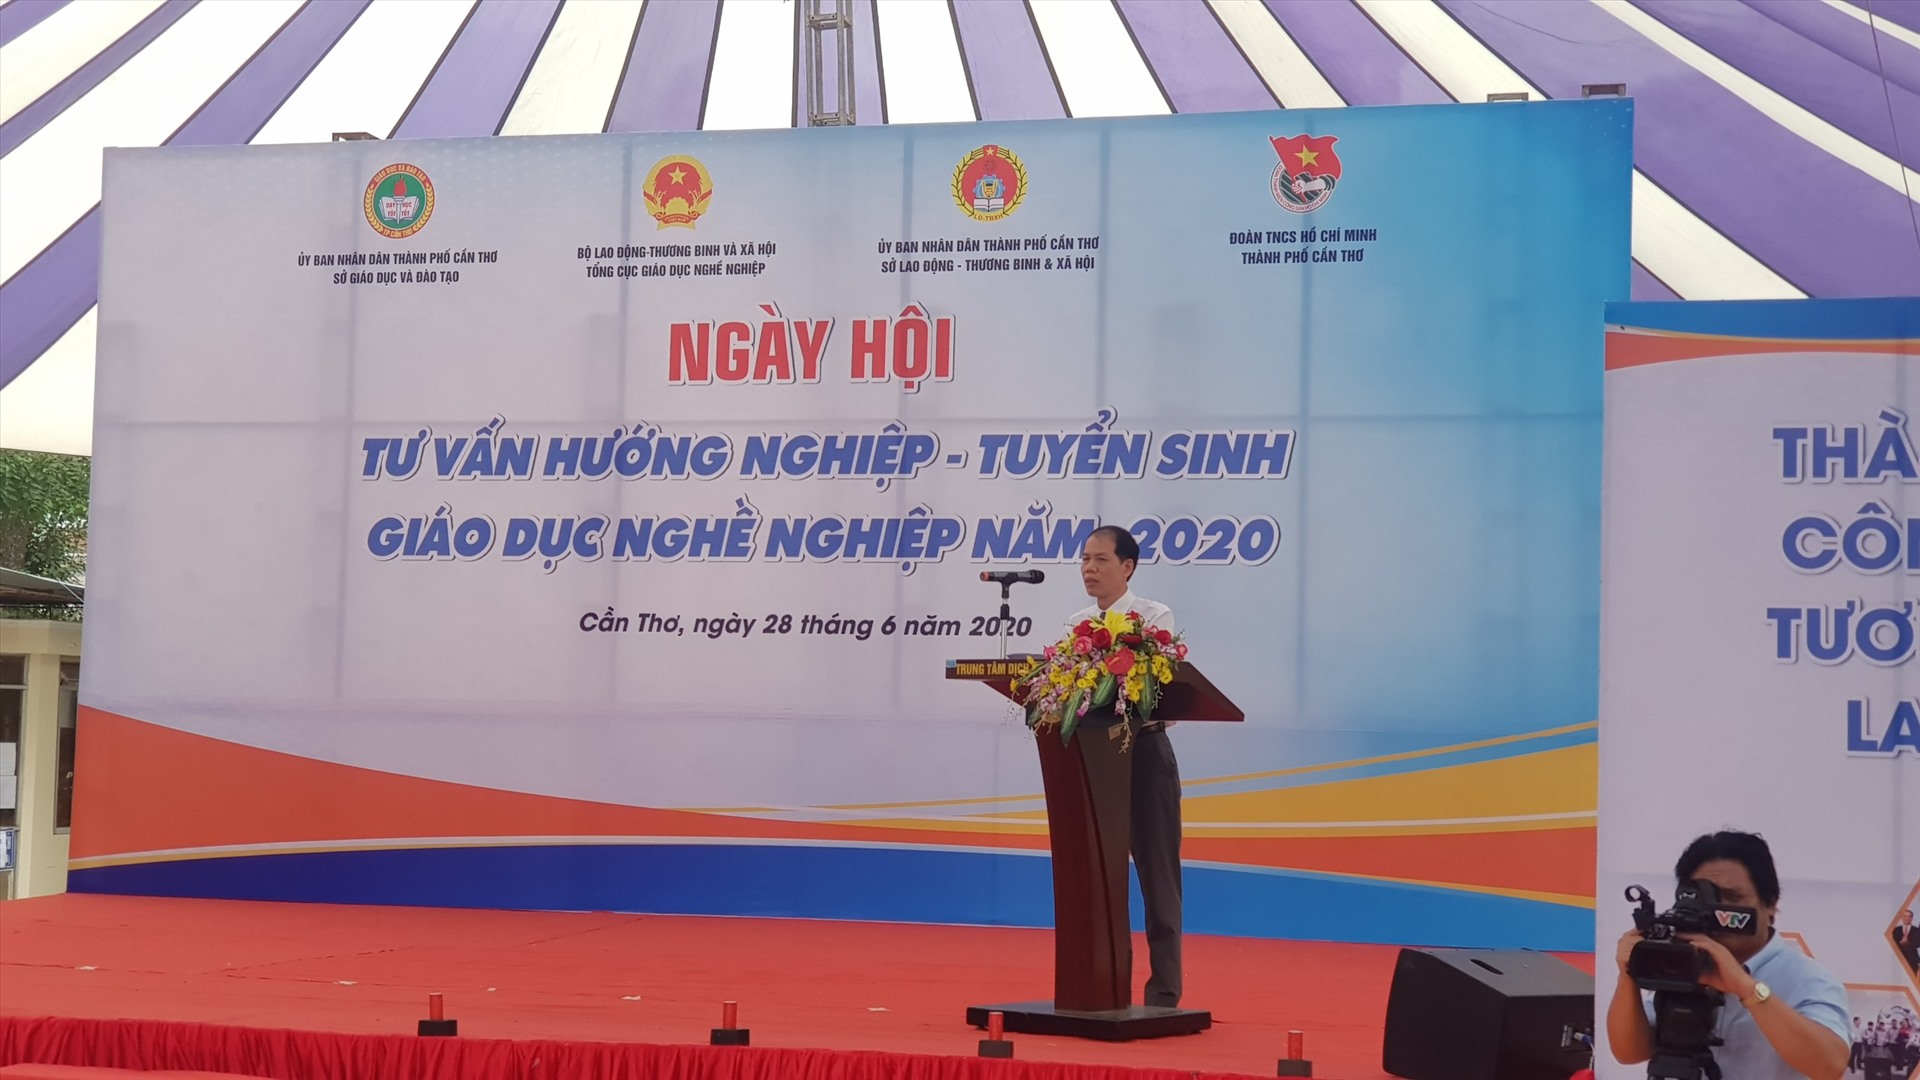 Ông Đỗ Năng Khánh, Phó Tổng cục trưởng Tổng cục Giáo dục nghề nghiệp phát biểu khai mạc ngày hội